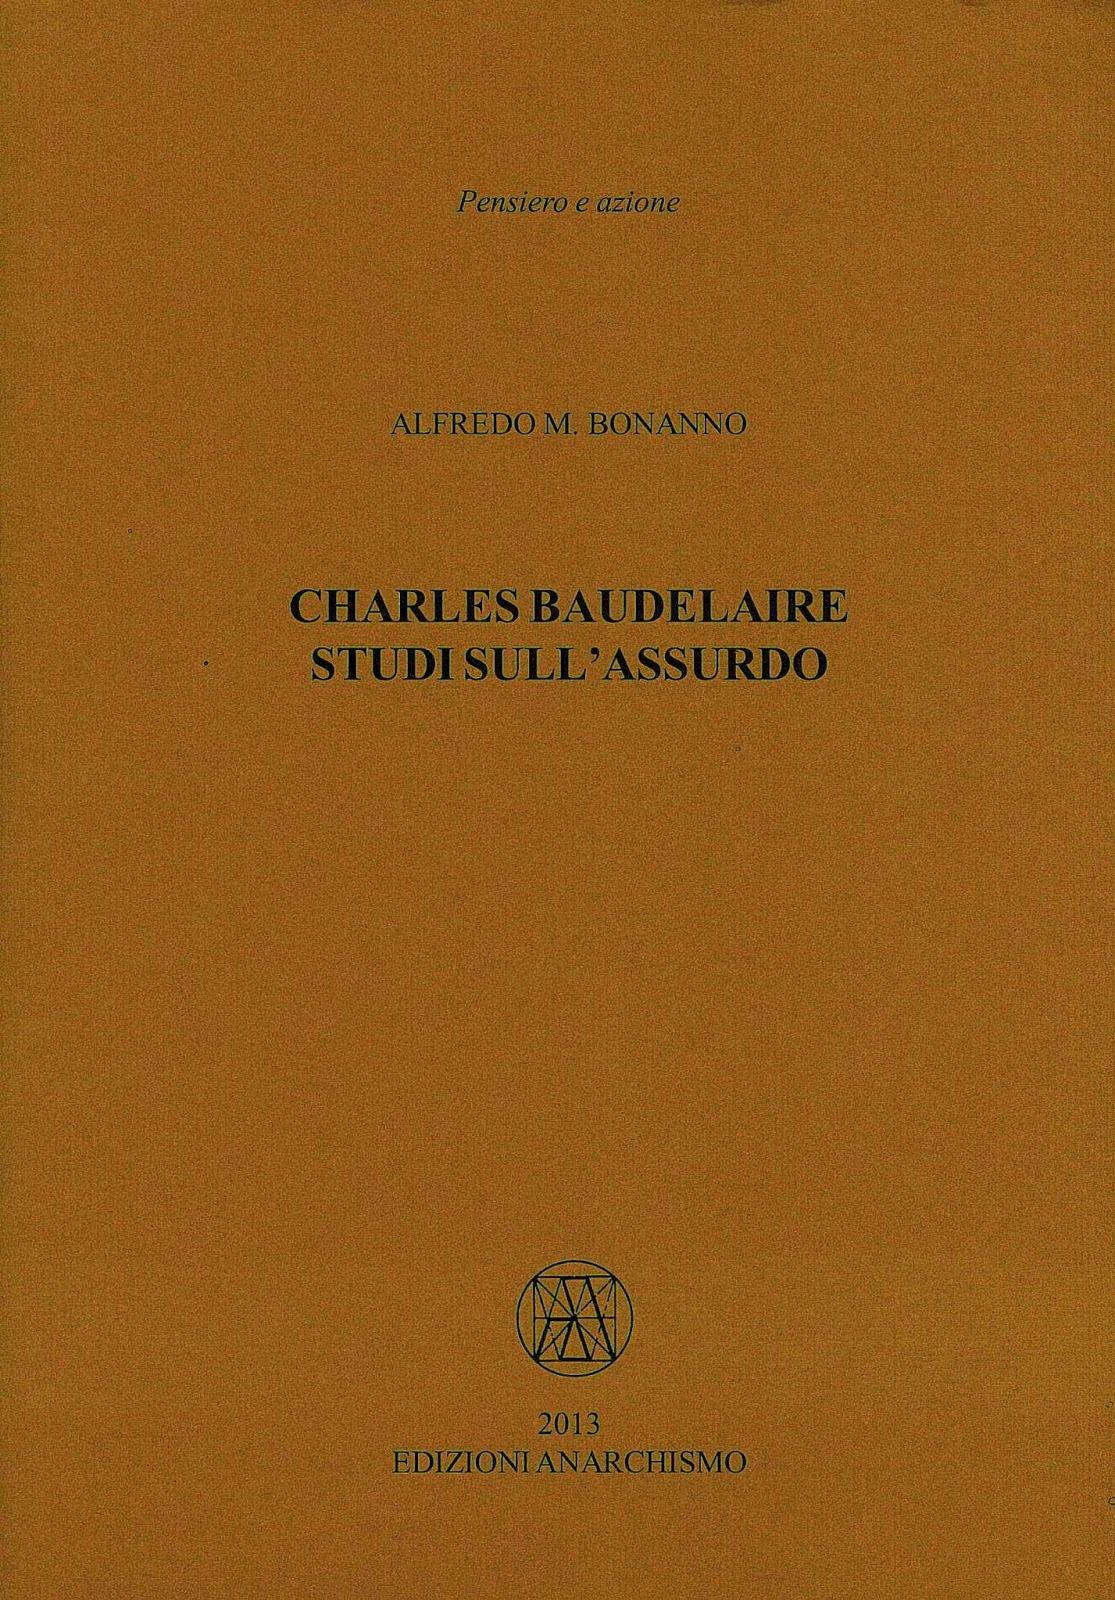 c-b-charles-baudelaire-studi-sull-assurdo-x-cover.jpg